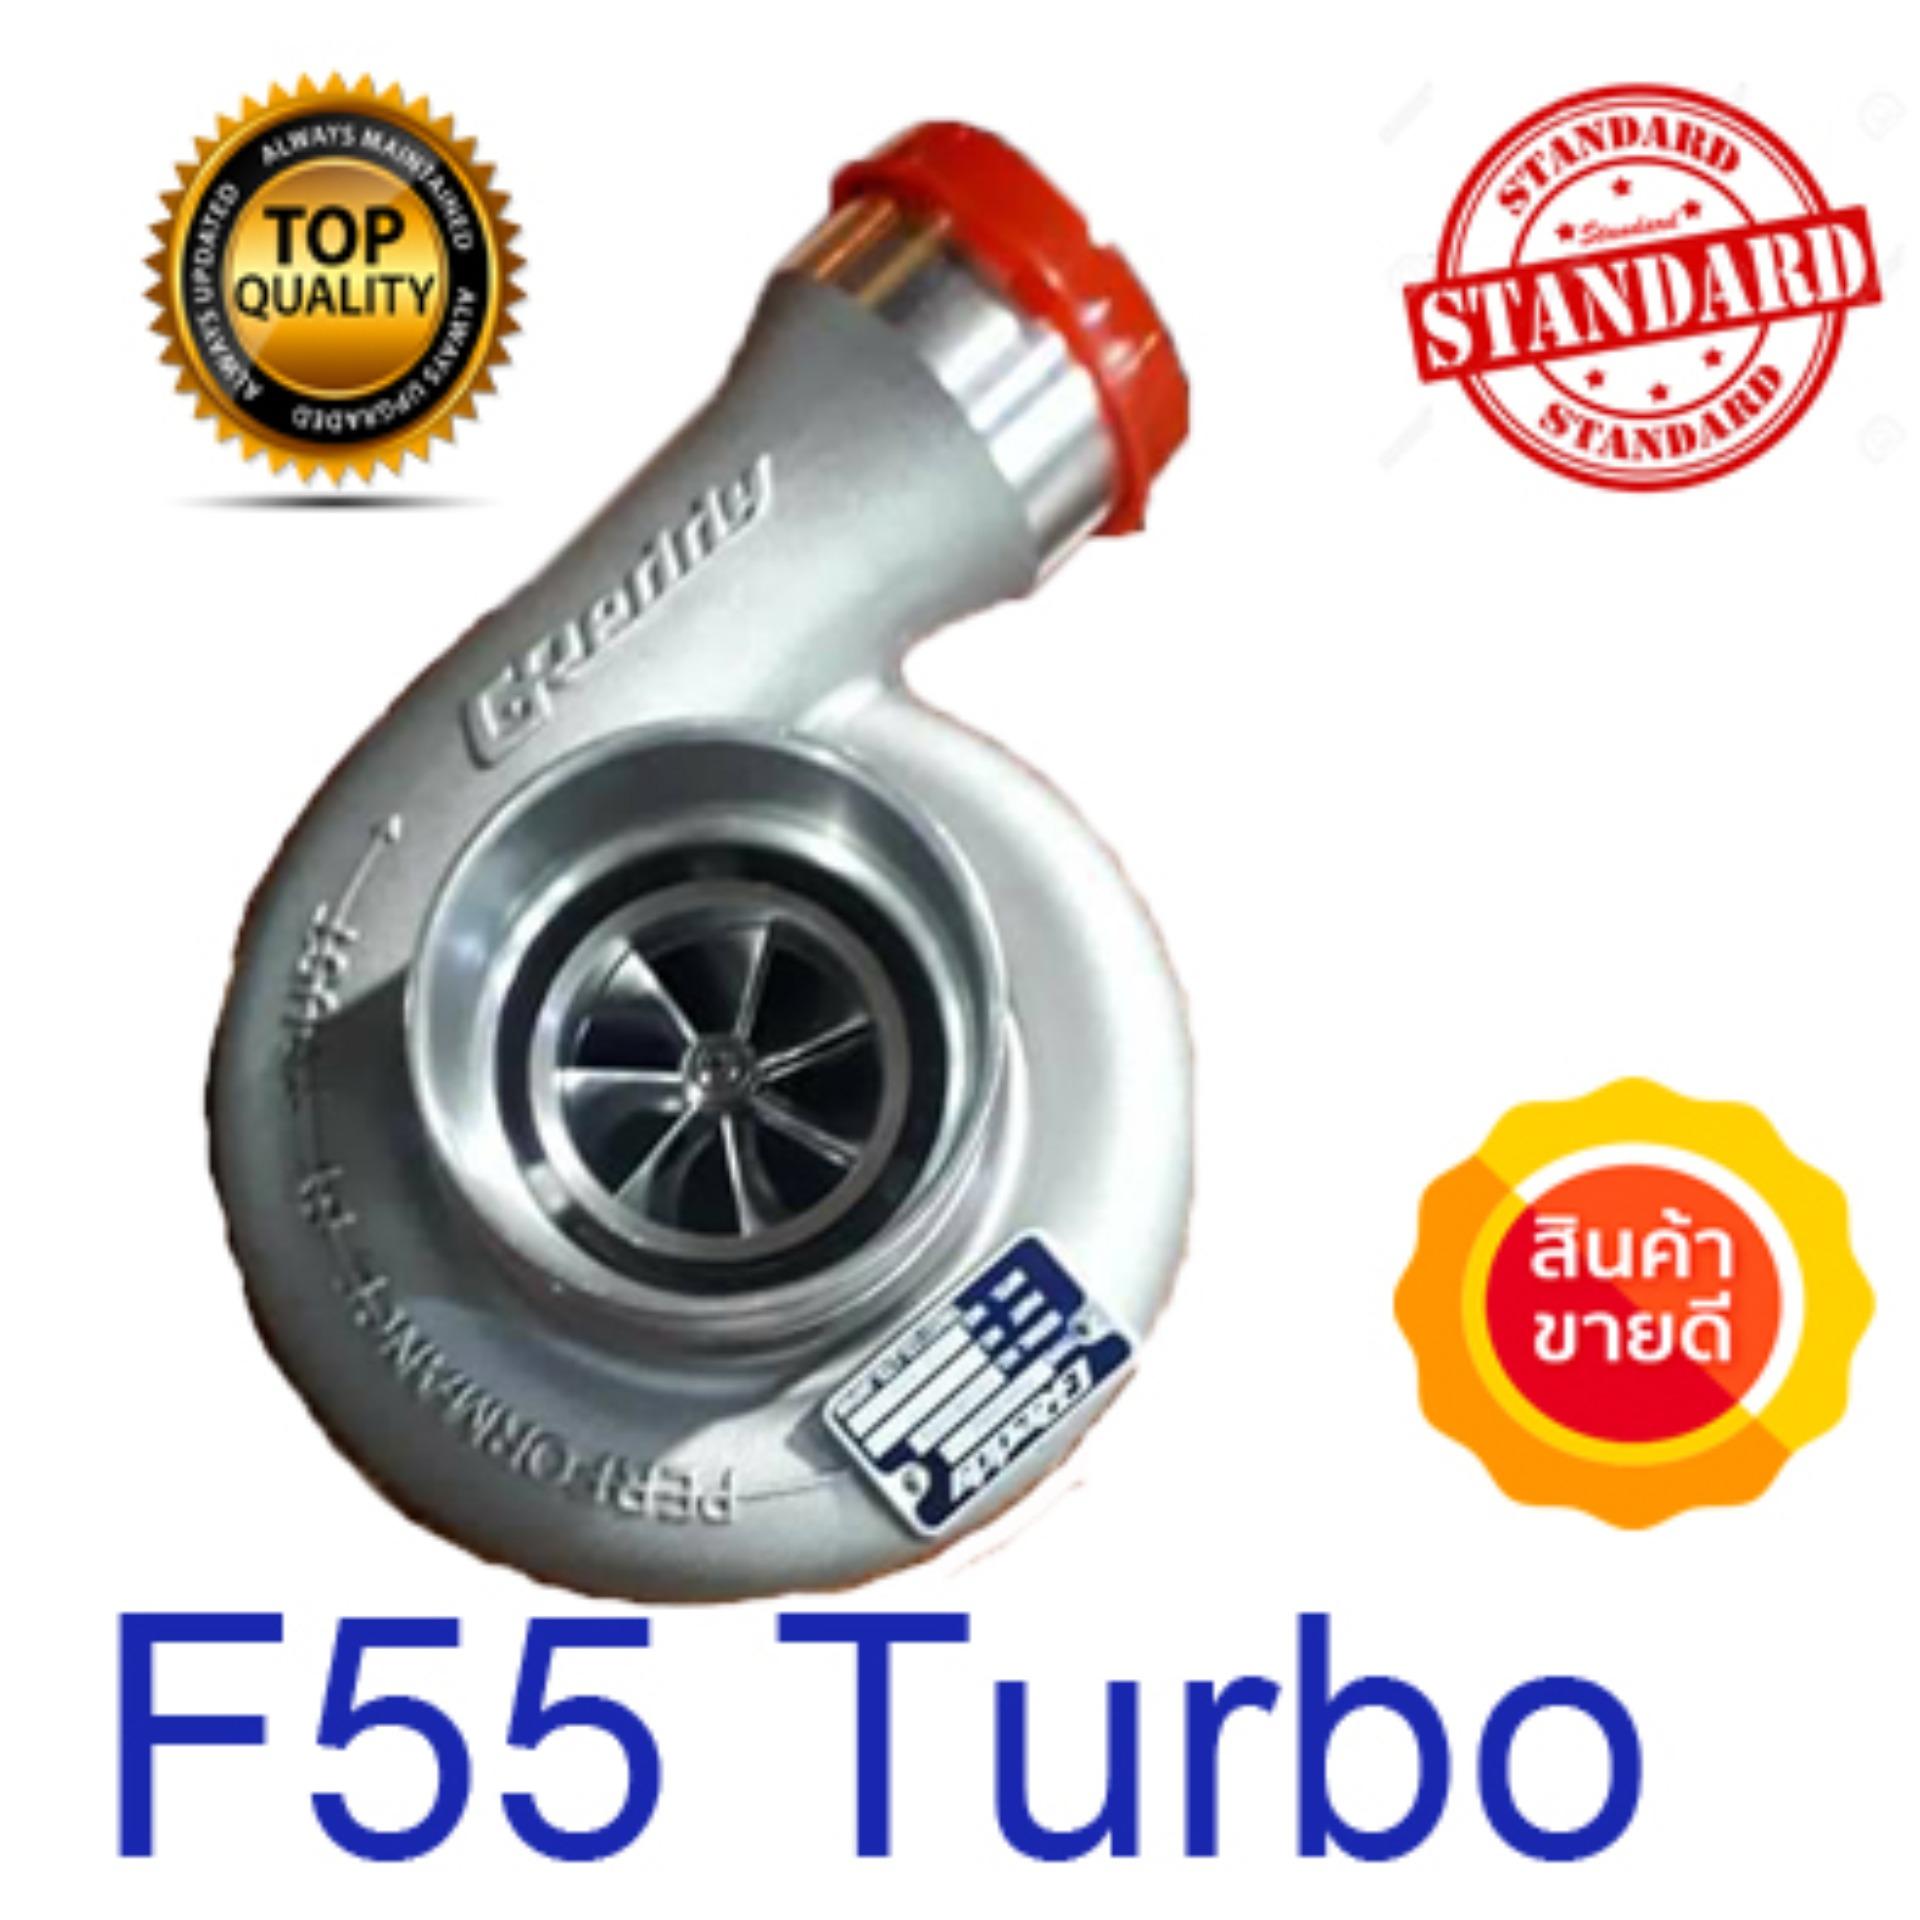 Turbo เทอร์โบ F55 F55v โข่ง12 ฝาเกรดดี้ ใบบิลเลทยอดสูง 7 ใบ โข่งหลัง เบอร์ 12 ไส้กลางกันรุนแต่ง บาลานซ์รอบสูง